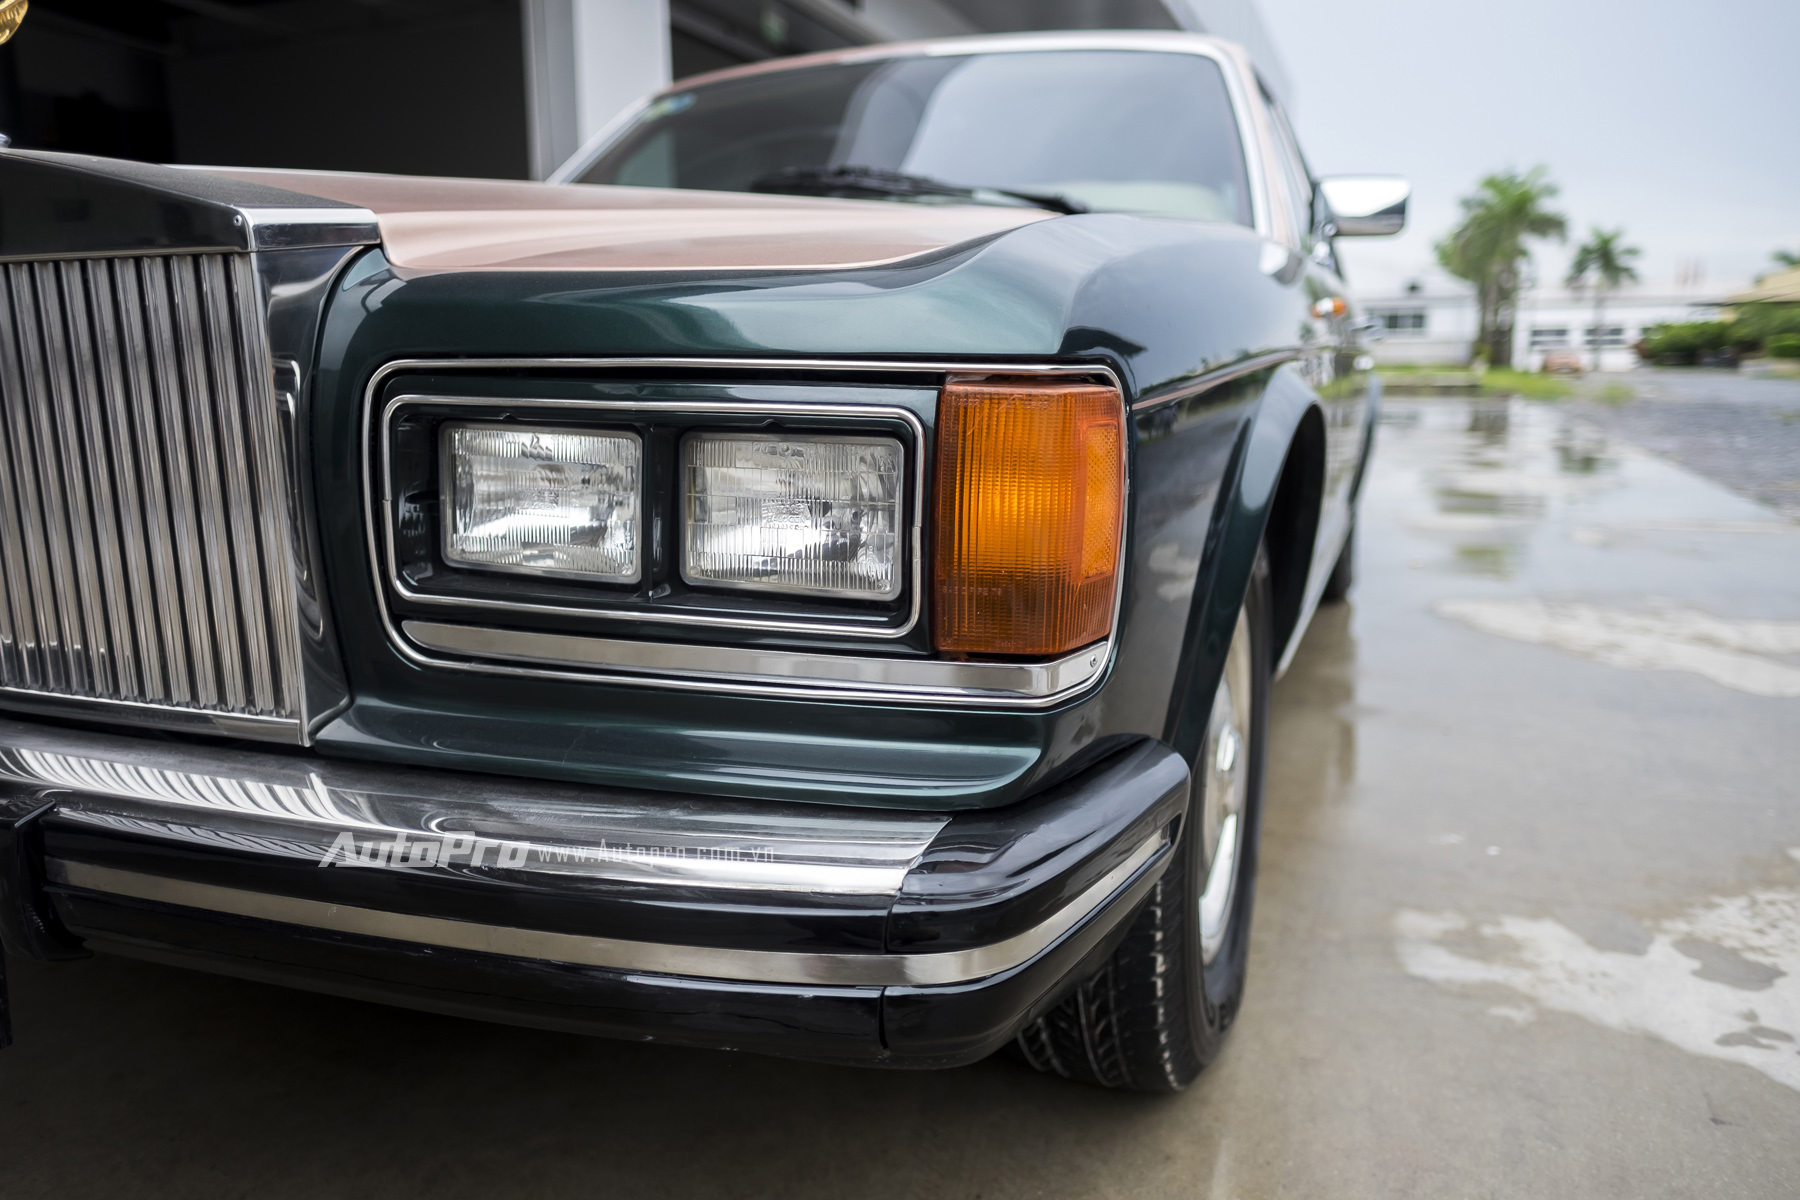 
Hệ thống chiếu sáng cho xe Rolls-Royce Silver Spirit 1982 thời bấy giờ vẫn là công nghệ bóng sợi đốt. Và những đường nét thiết kế của xe thì vẫn vuông vắn và lịch sự như thường thấy của những chiếc xe cao cấp thời bây giờ.
